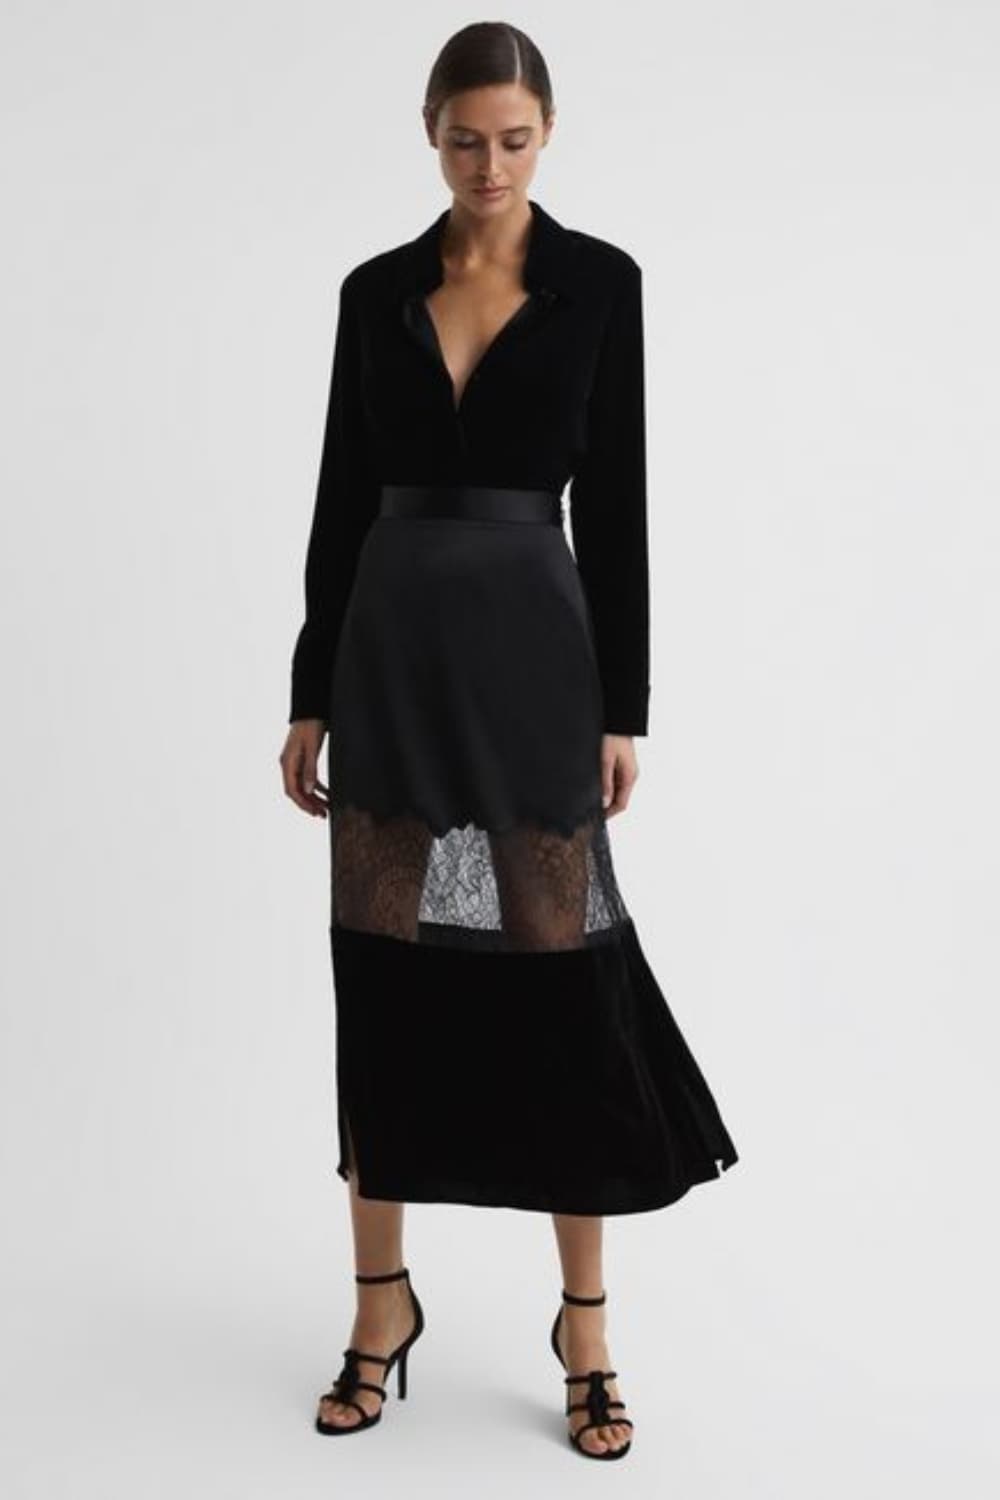 Velvet skirt and top for work dinner party